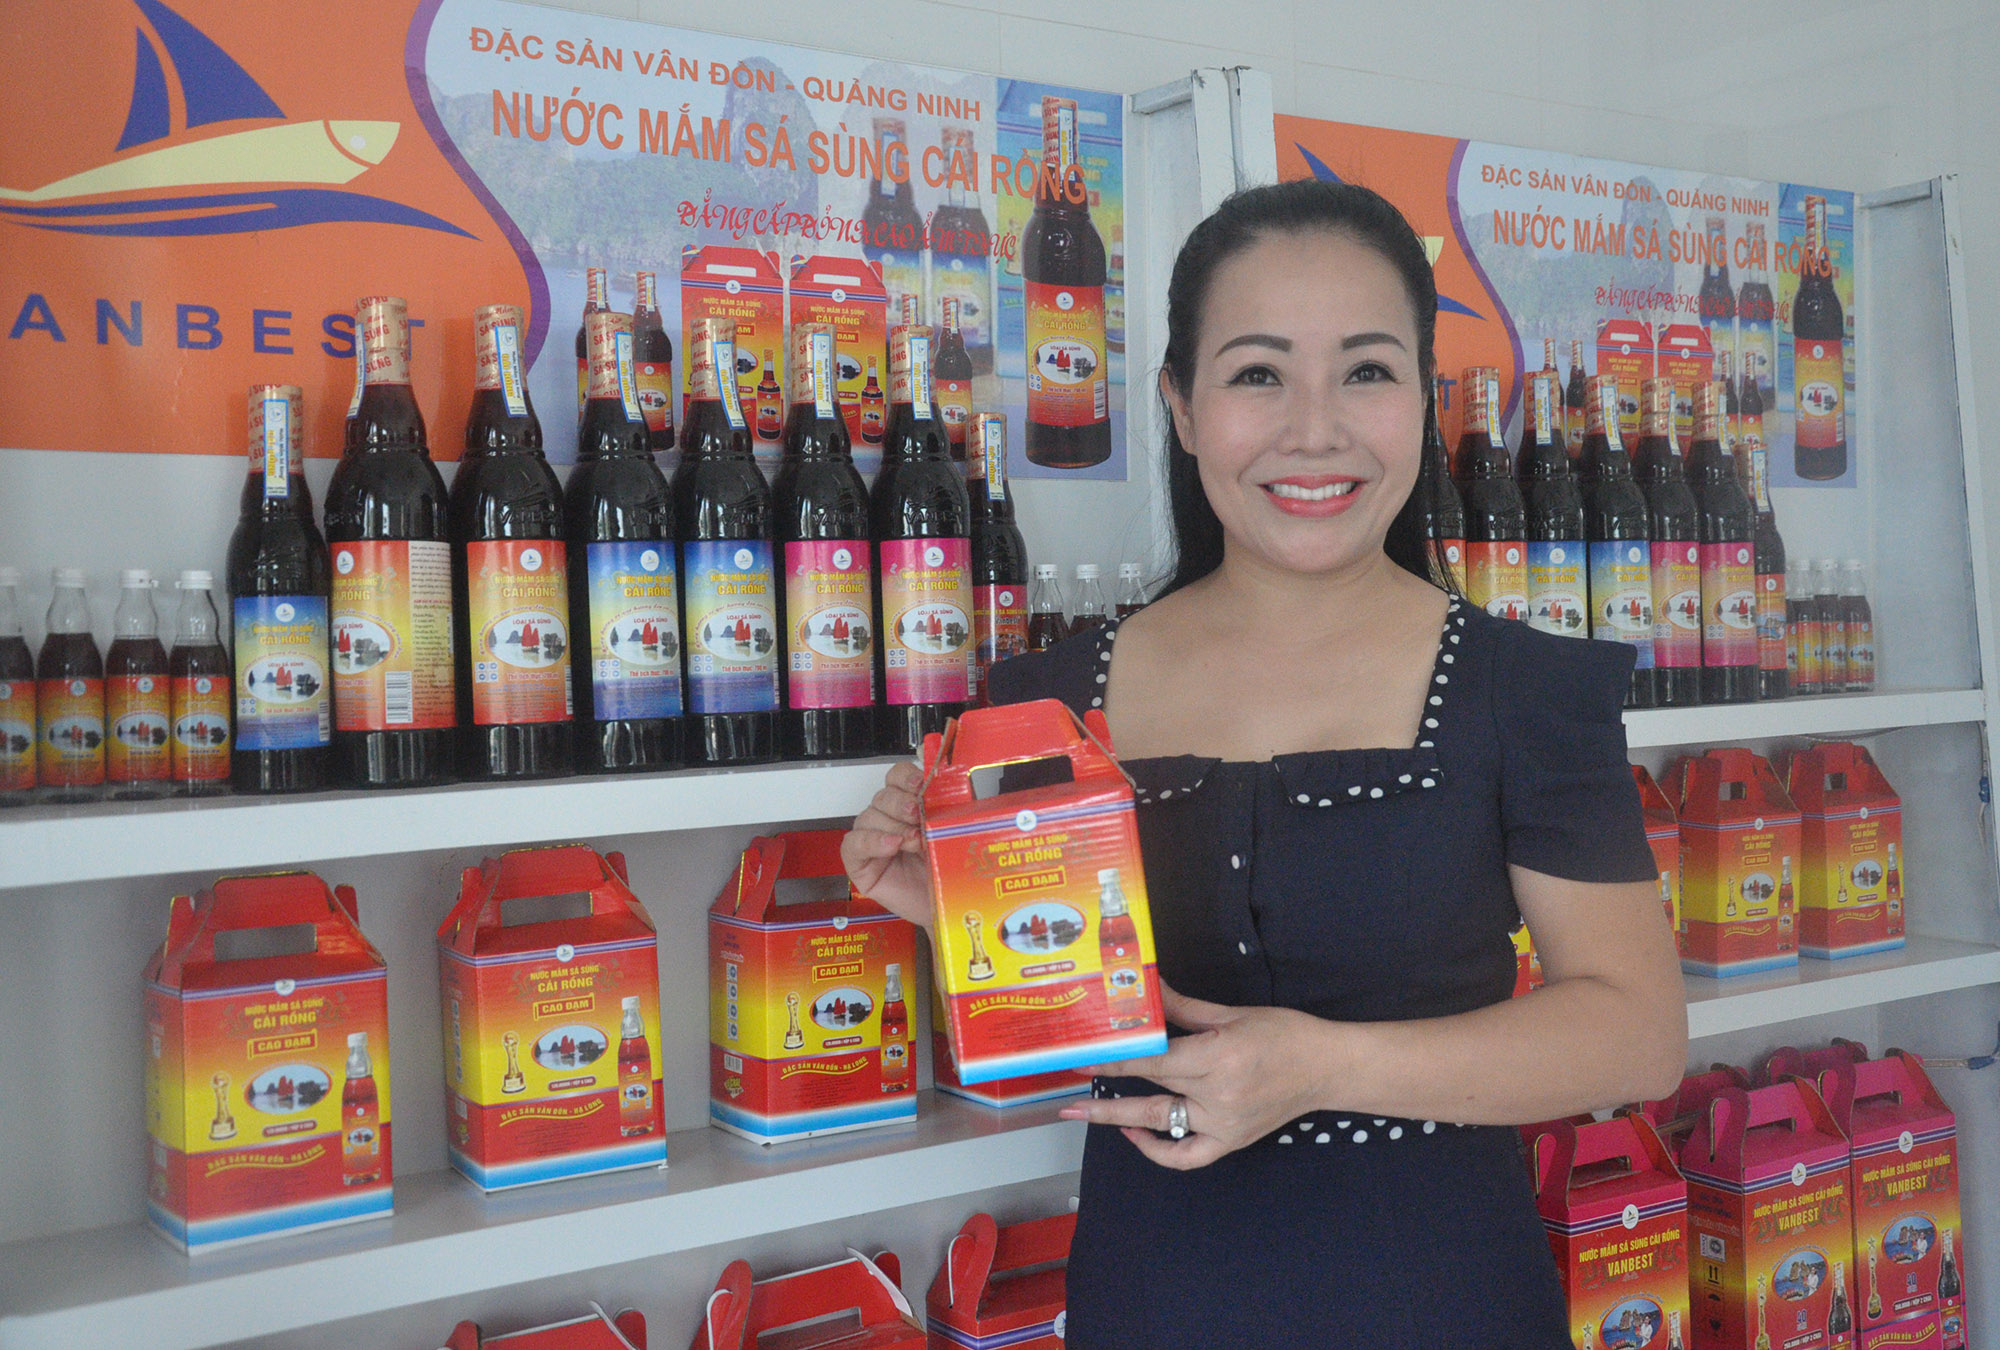 Nữ doanh nhân Cao Hồng Vân đã đưa nước mắm sá sùng Vân Đồn bày bán trong hệ thống Vinmax toàn quốc.